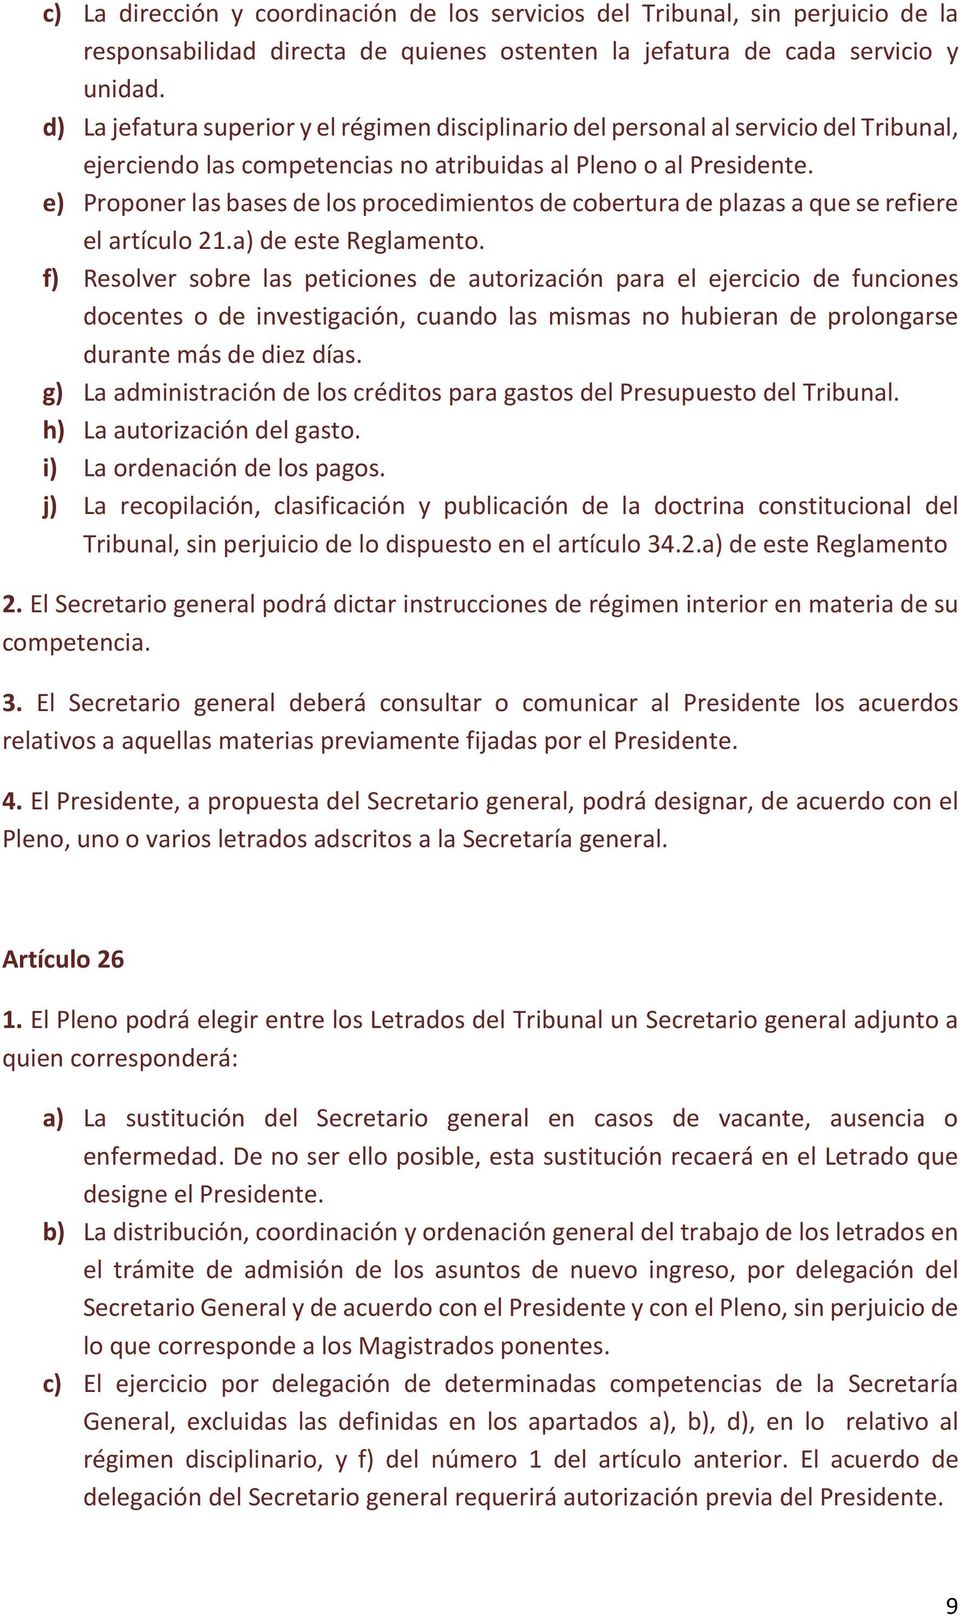 e) Proponer las bases de los procedimientos de cobertura de plazas a que se refiere el artículo 21.a) de este Reglamento.